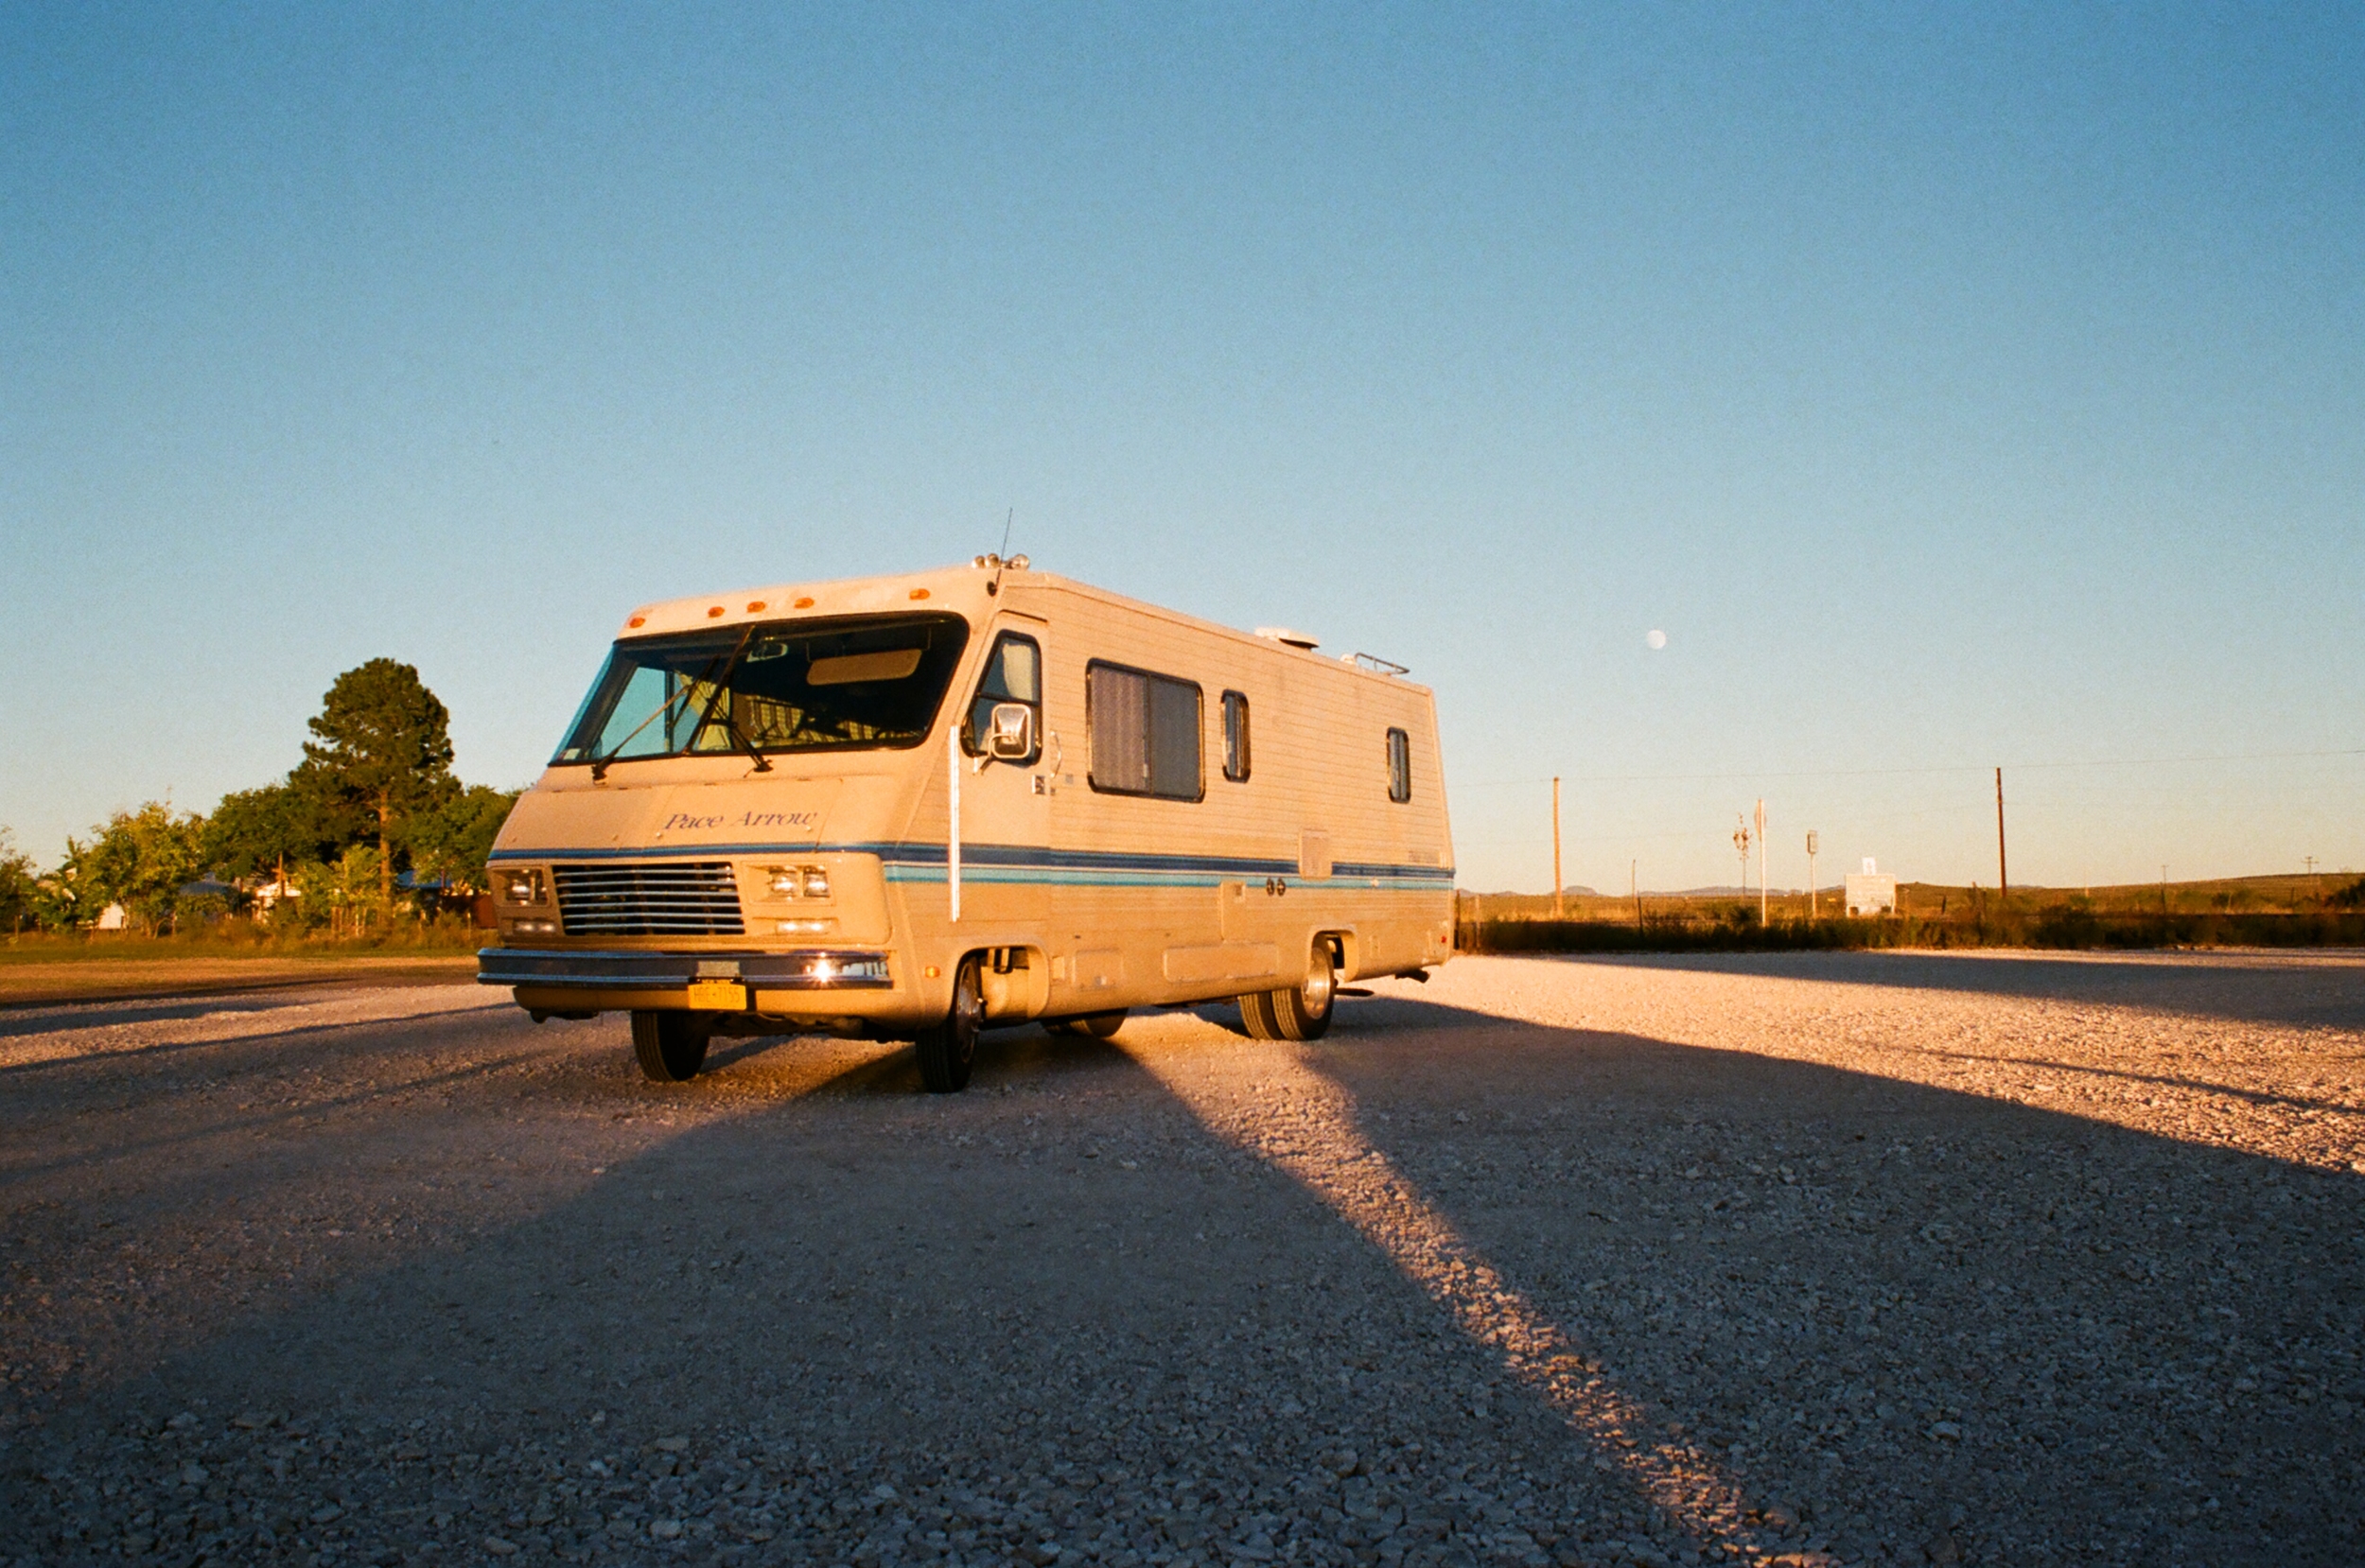 Tasha's RV, Marfa, Texas